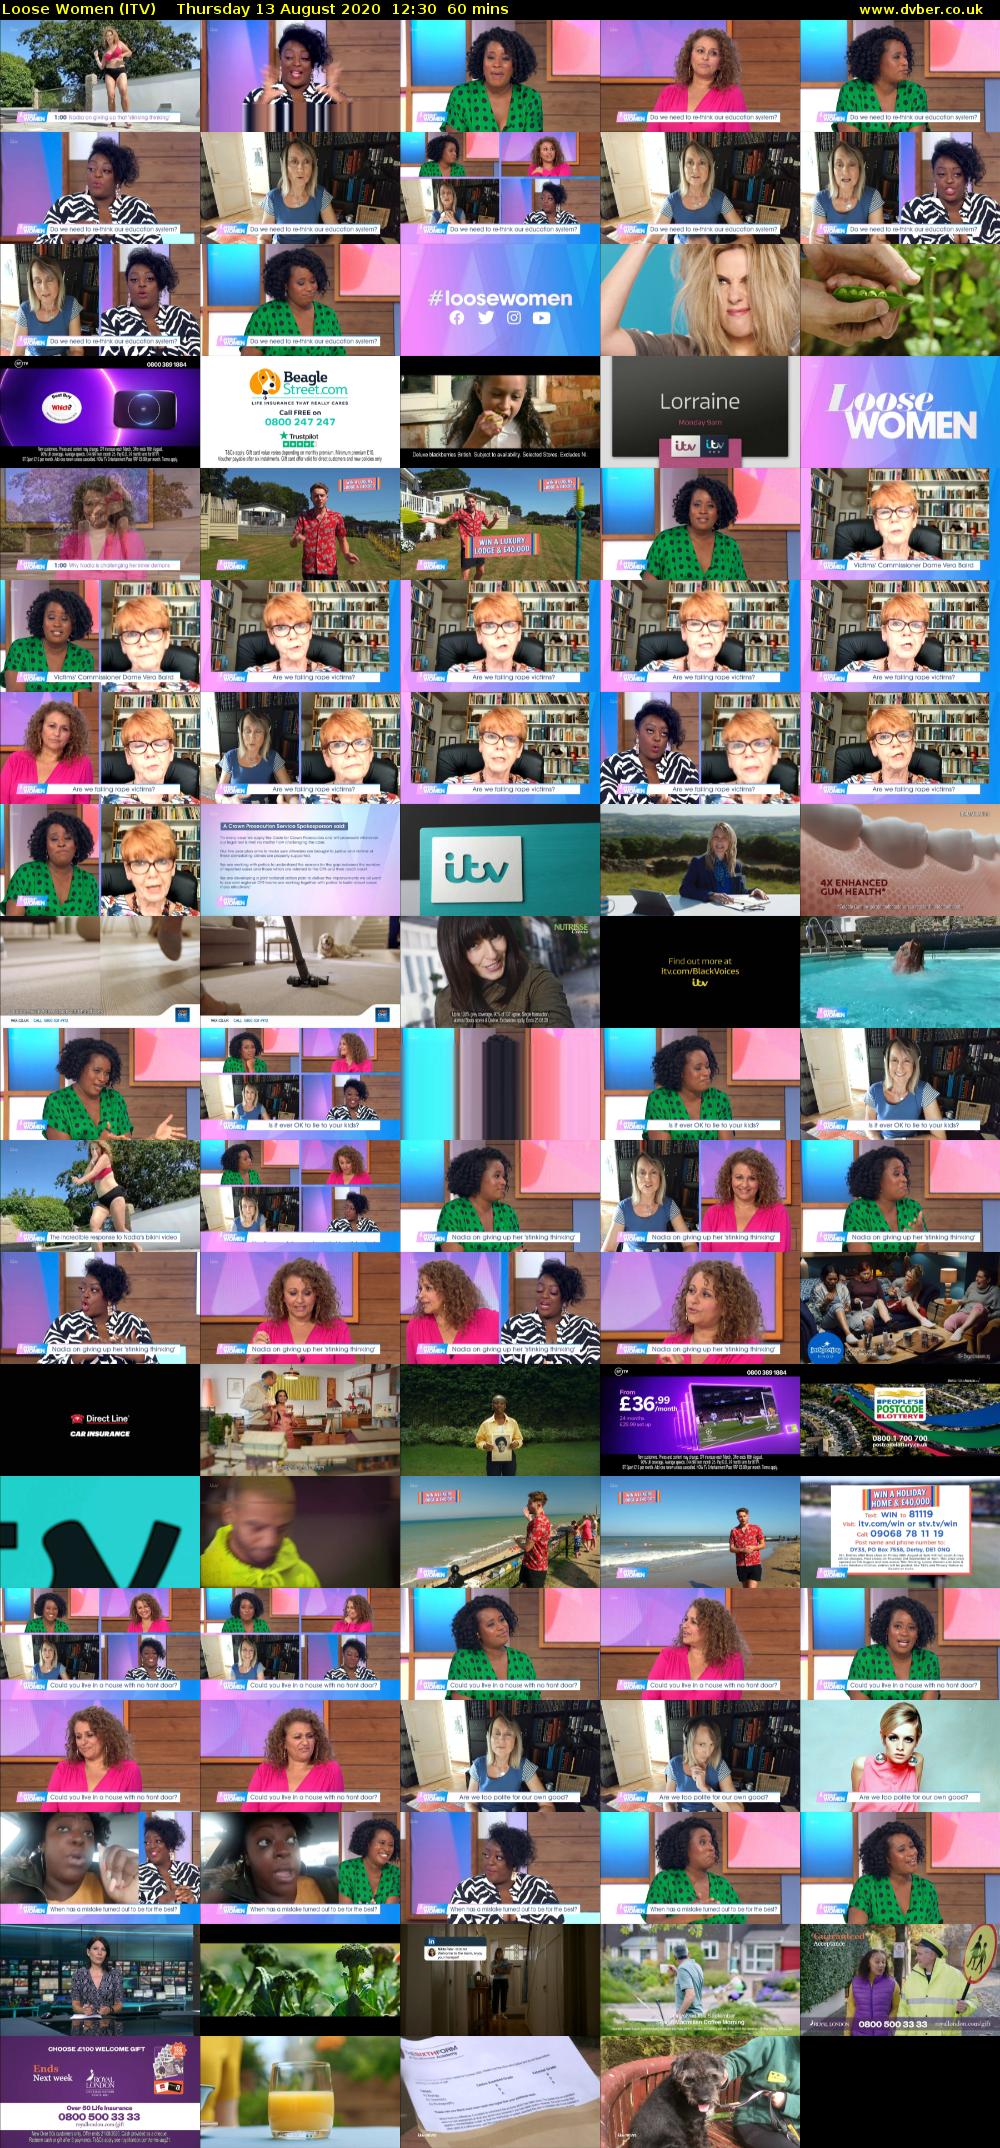 Loose Women (ITV) Thursday 13 August 2020 12:30 - 13:30